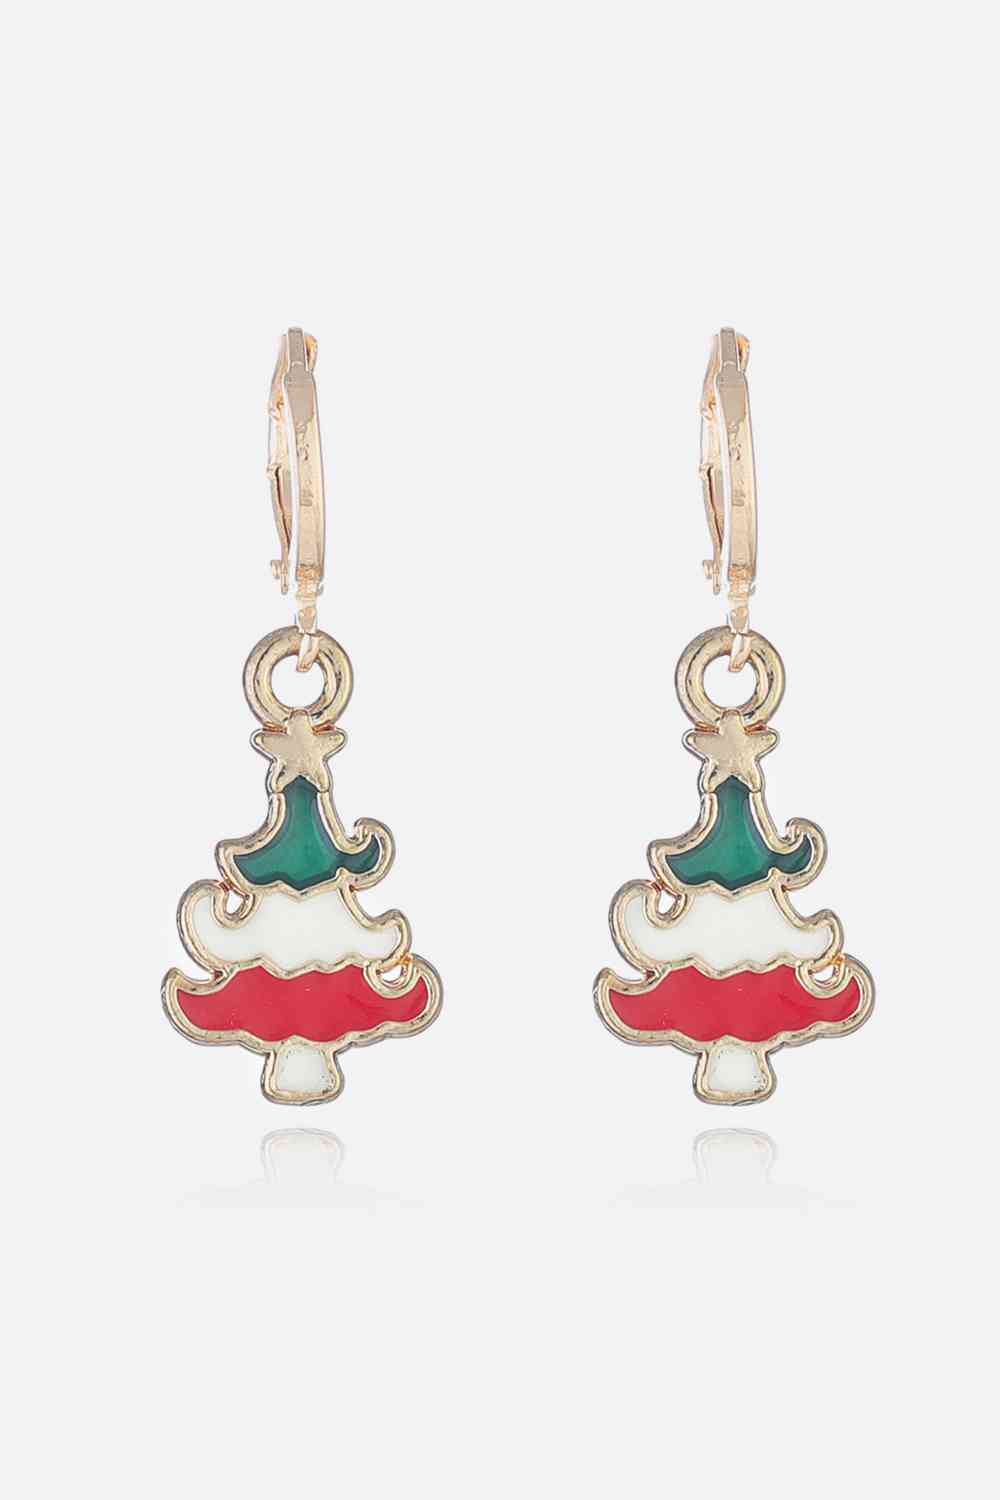 Christmas Theme Alloy Earrings - Style E / One Size - Women’s Jewelry - Earrings - 14 - 2024